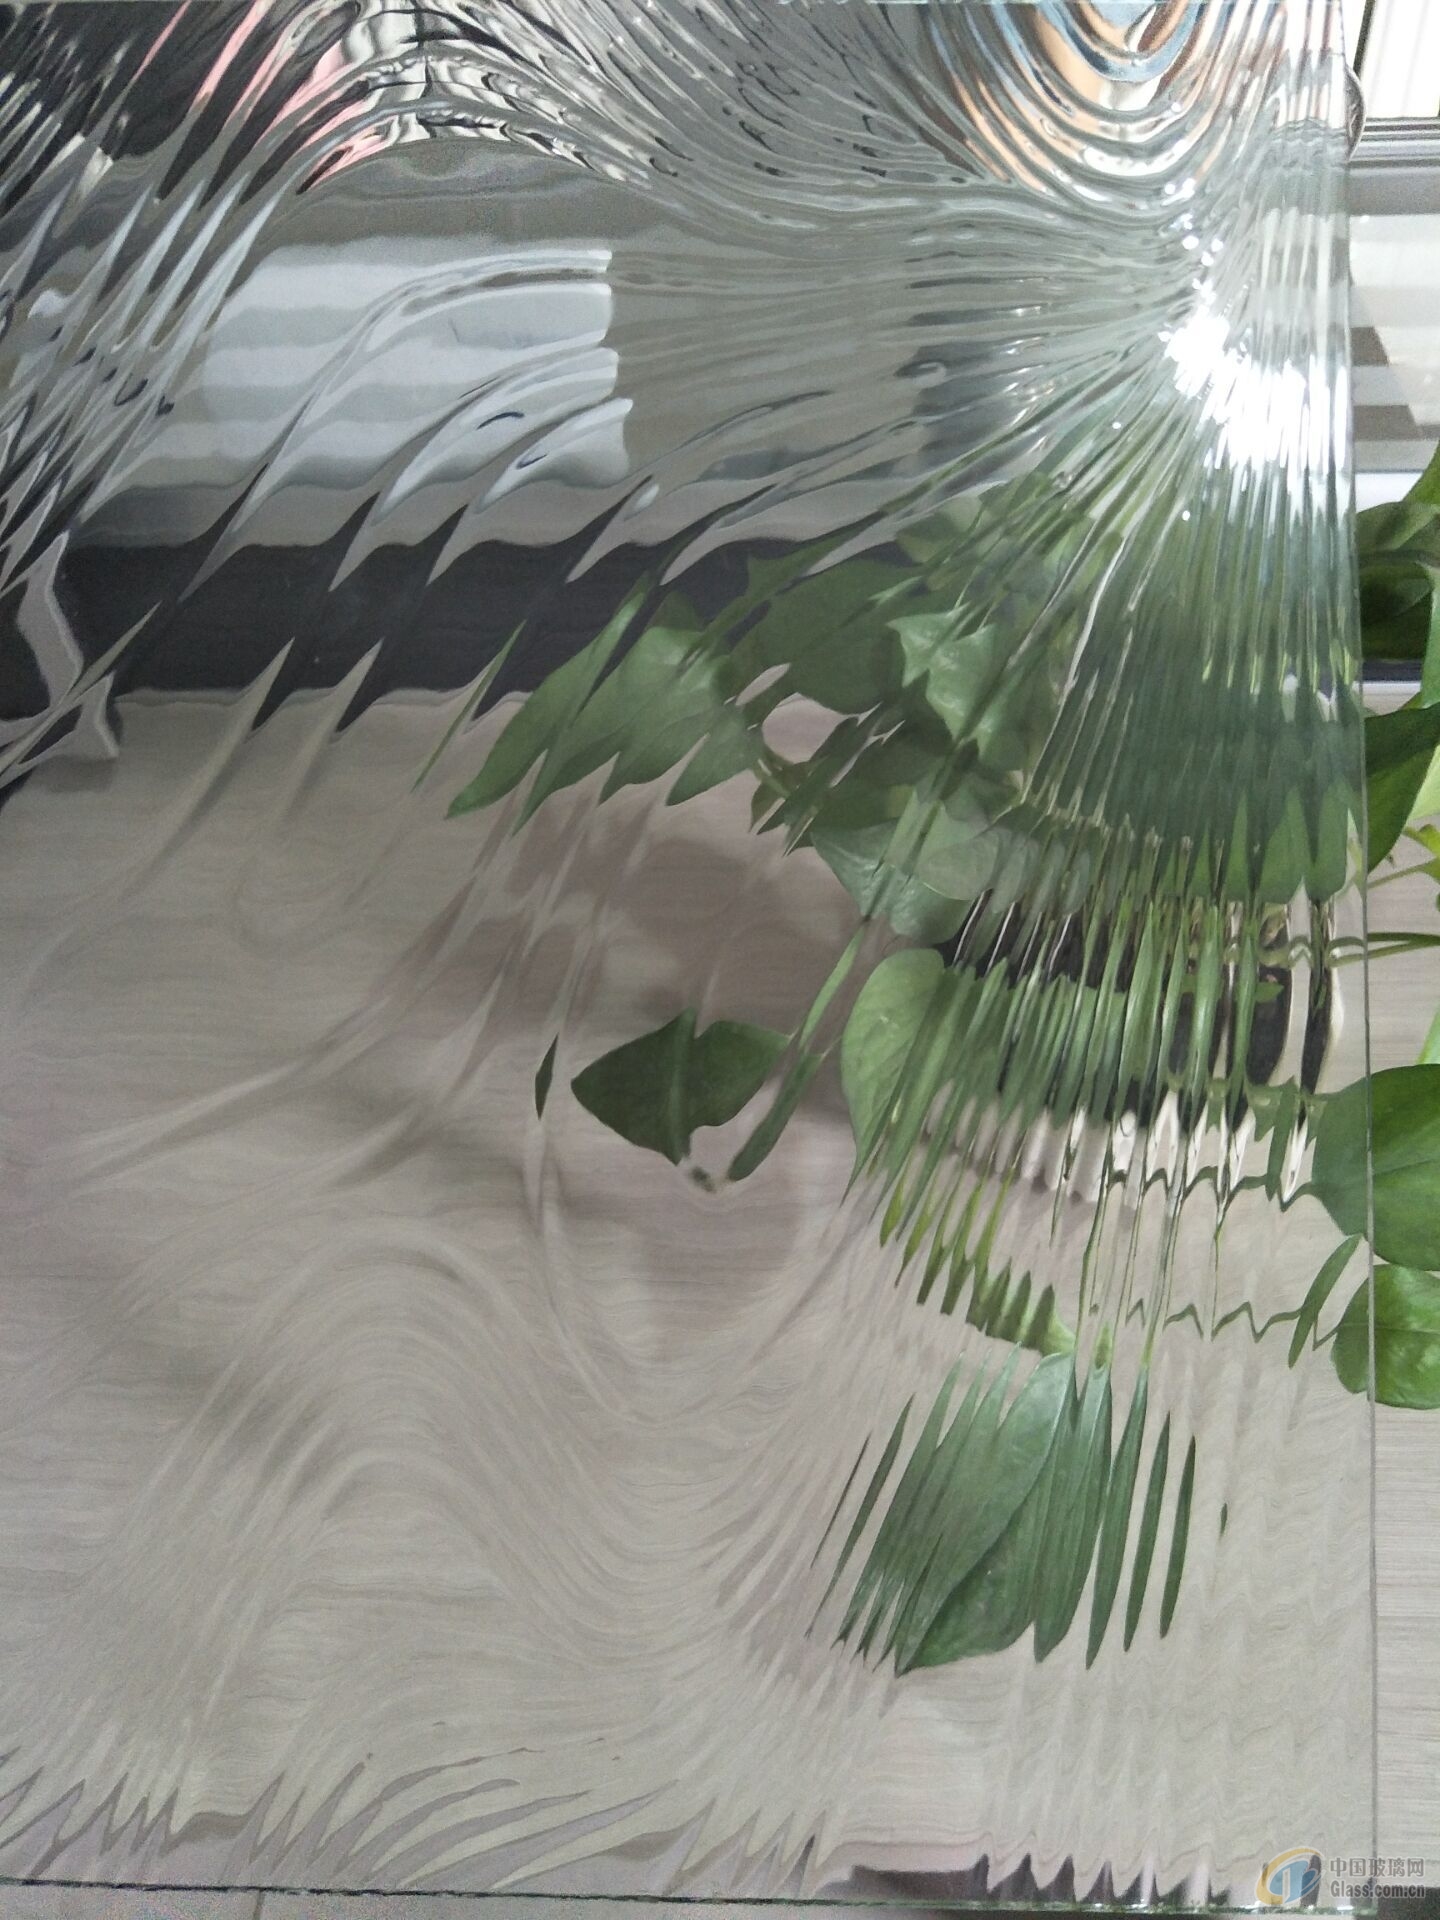 艺术彩色海棠花玻璃 玻璃原片 玻璃加工 西关玻璃七彩压花玻璃-阿里巴巴